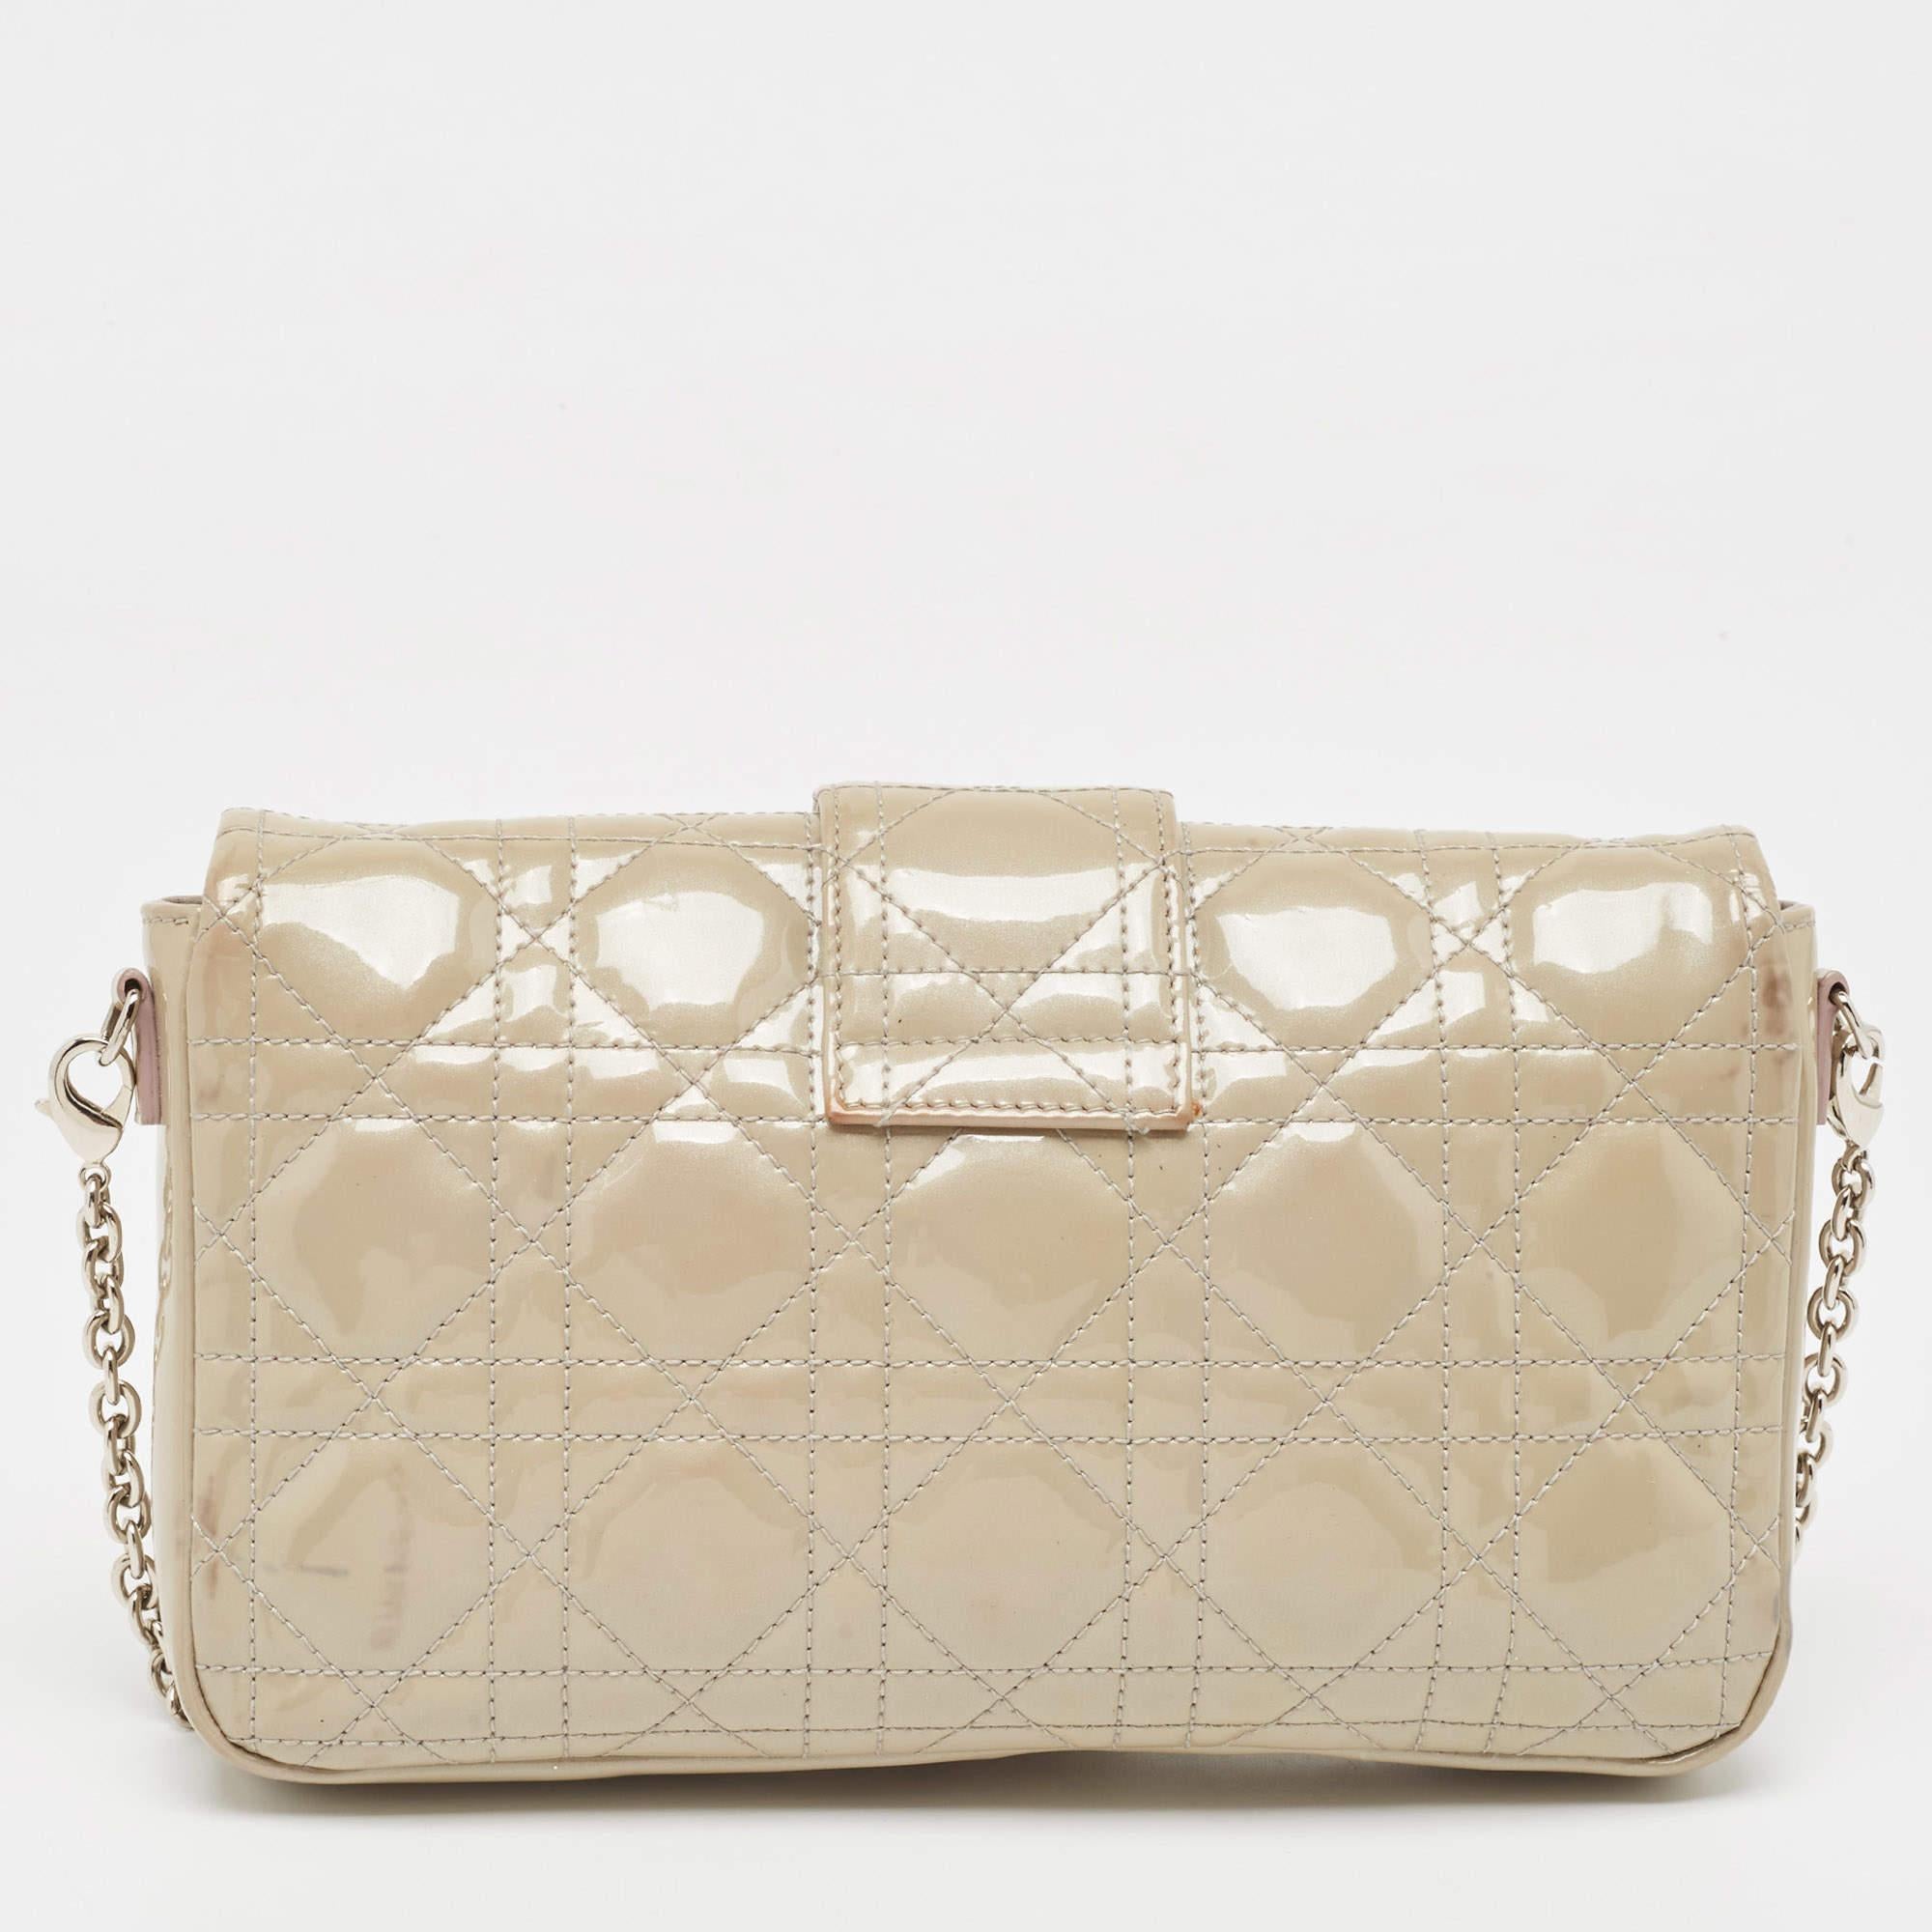 Eine klassische Handtasche verspricht dauerhafte Attraktivität und unterstreicht Ihren Stil immer wieder aufs Neue. Diese Tasche von Dior ist eine solche Kreation. Das ist ein guter Kauf.
